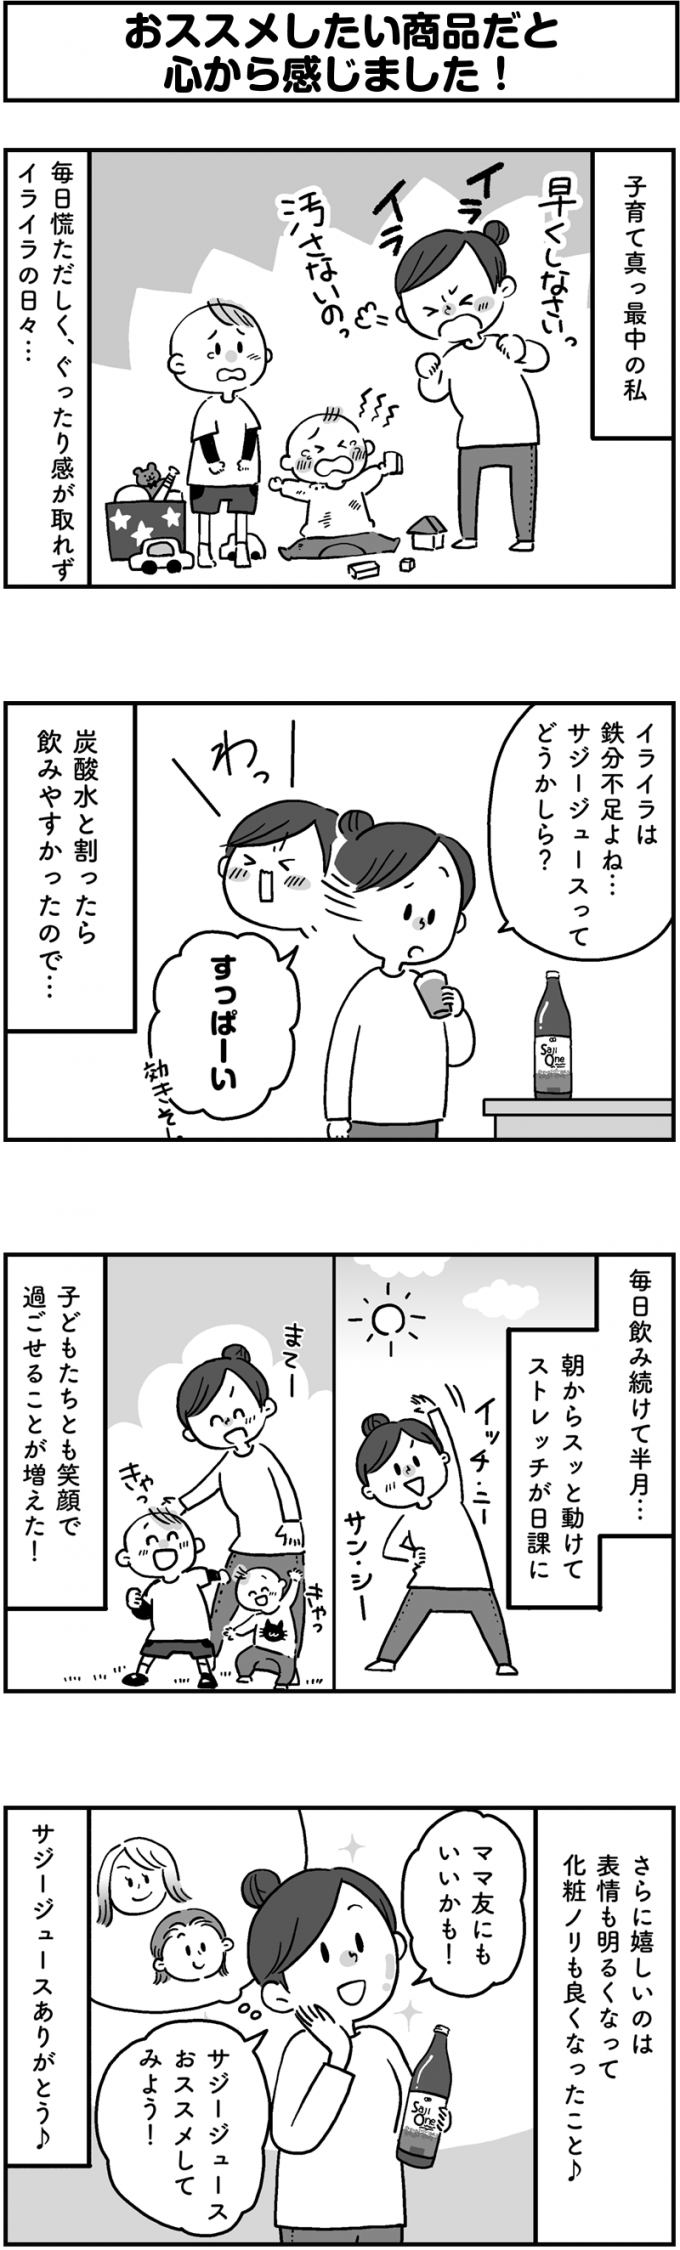  サジージュース「SajiOne」のPR4コマ漫画第3弾の画像1枚目